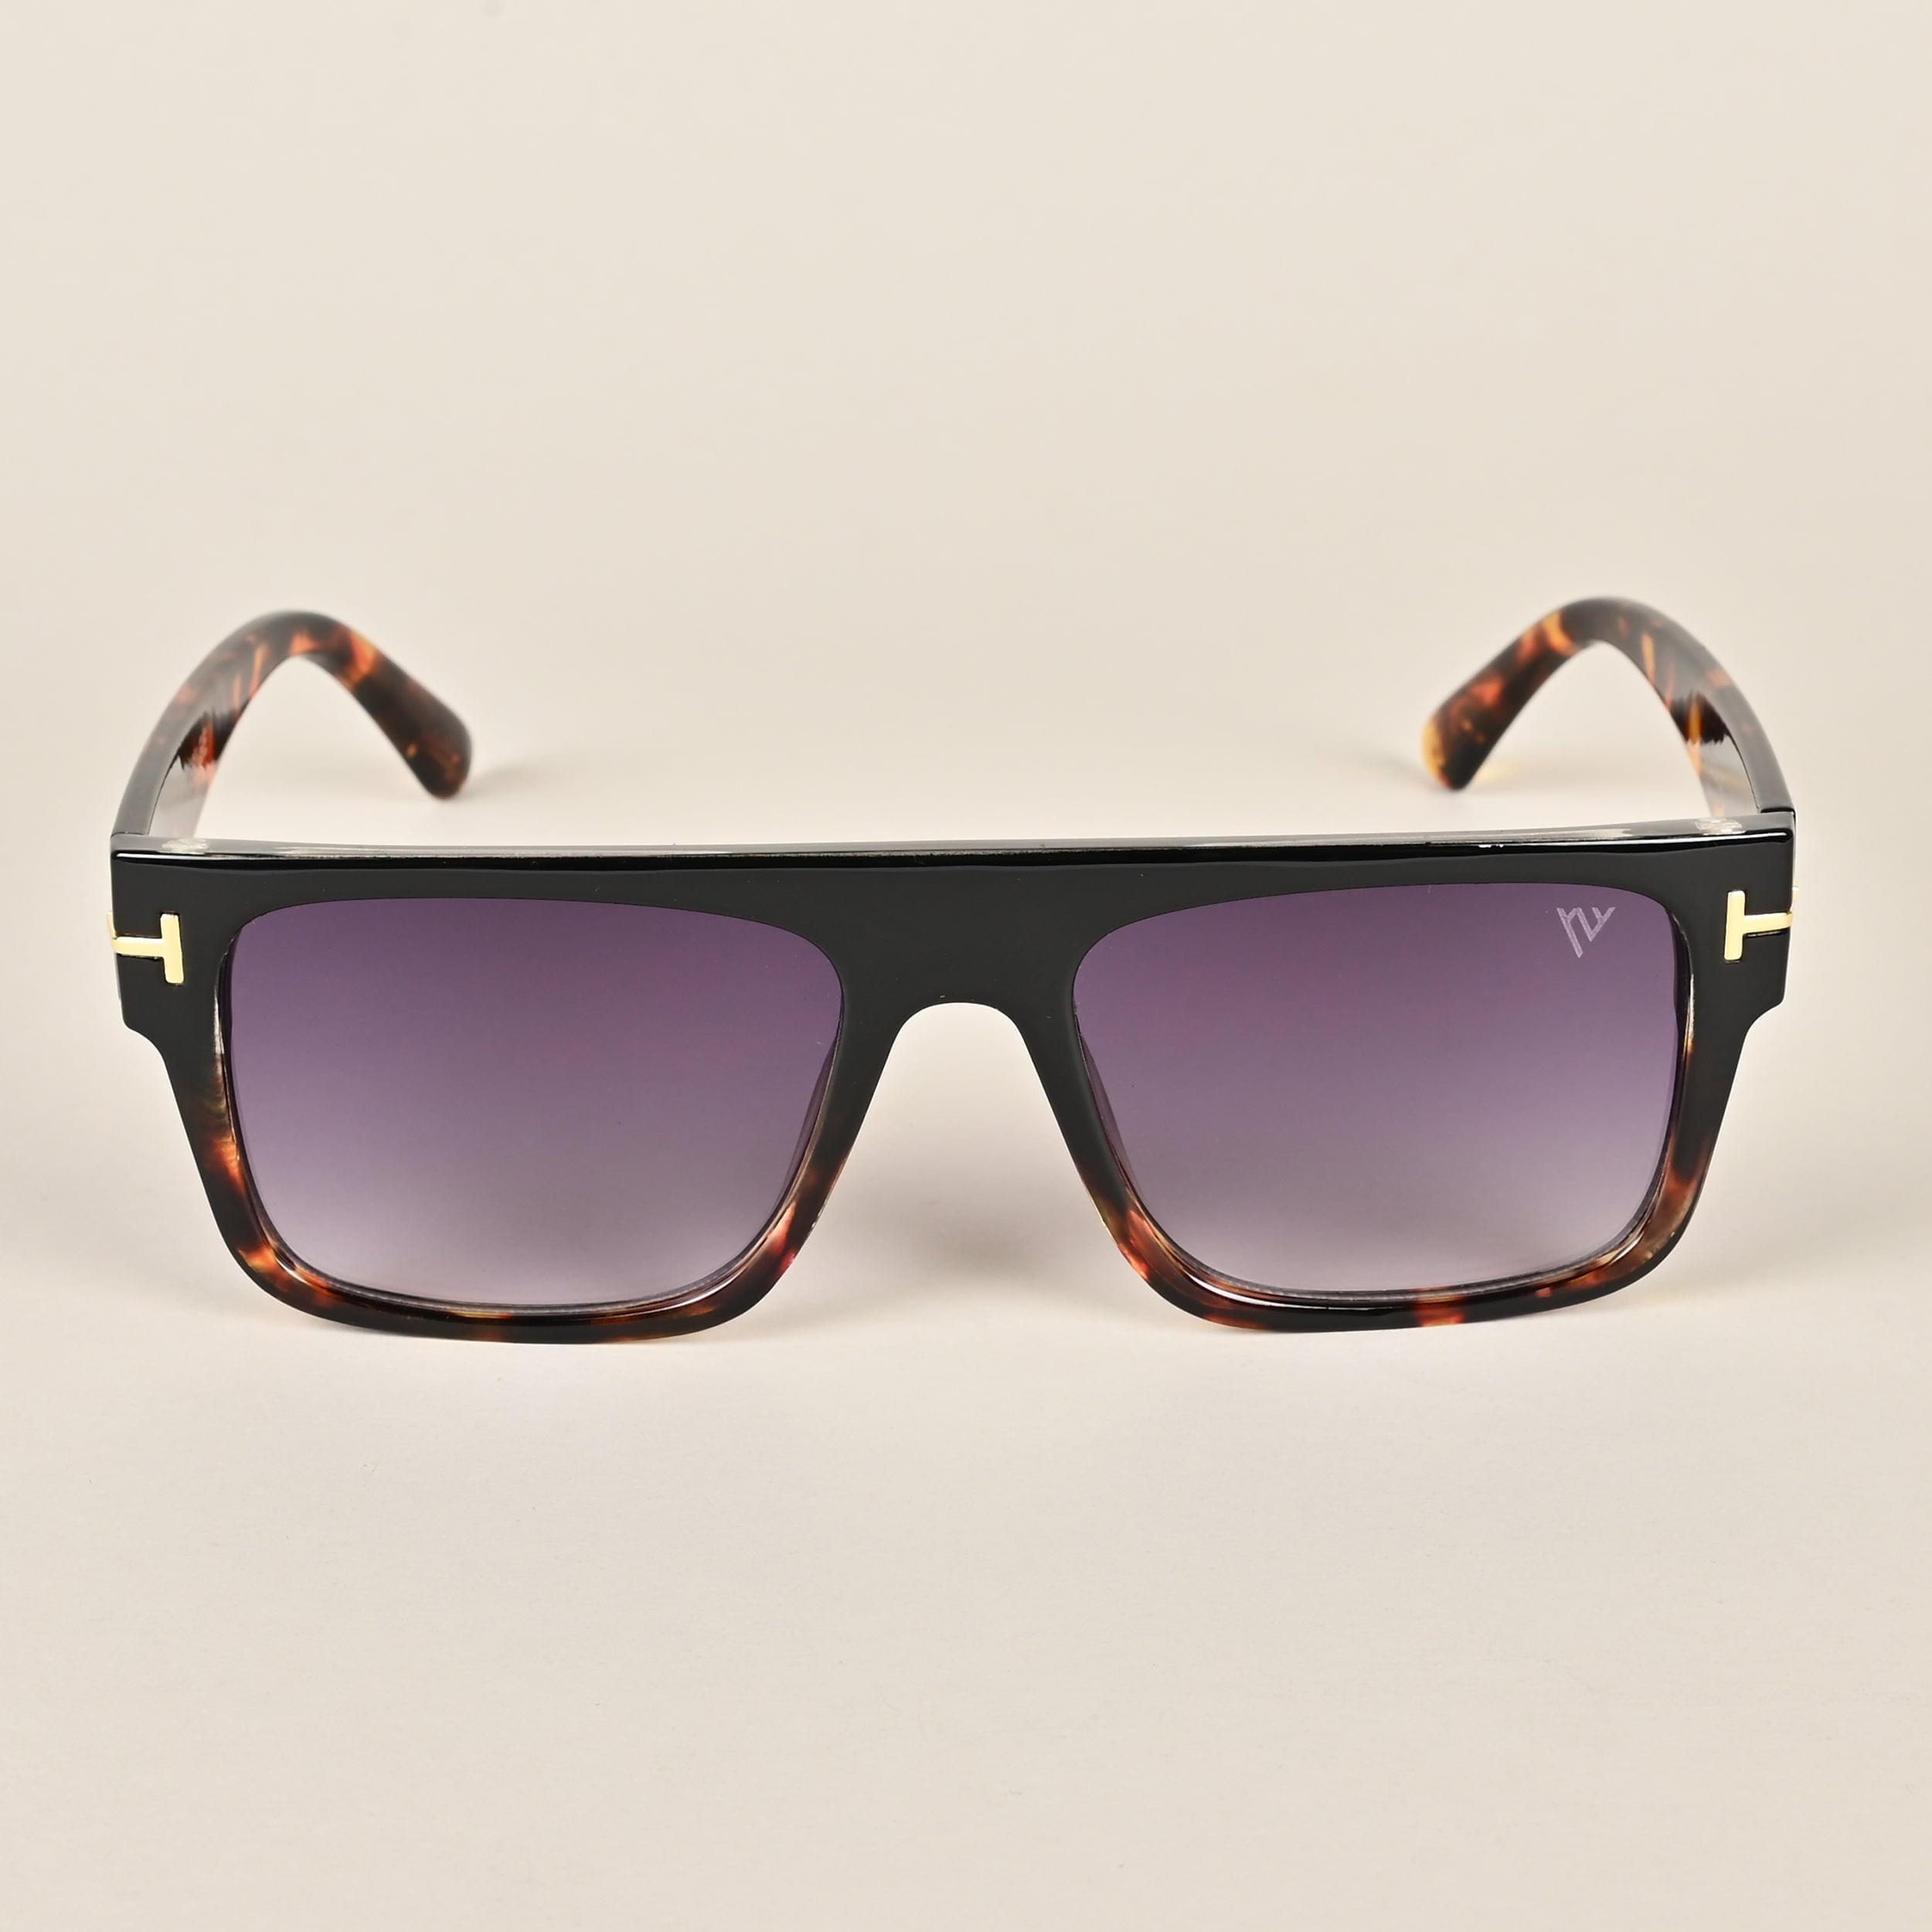 Voyage Black & Brown Wayfarer Sunglasses (A16MG3934)